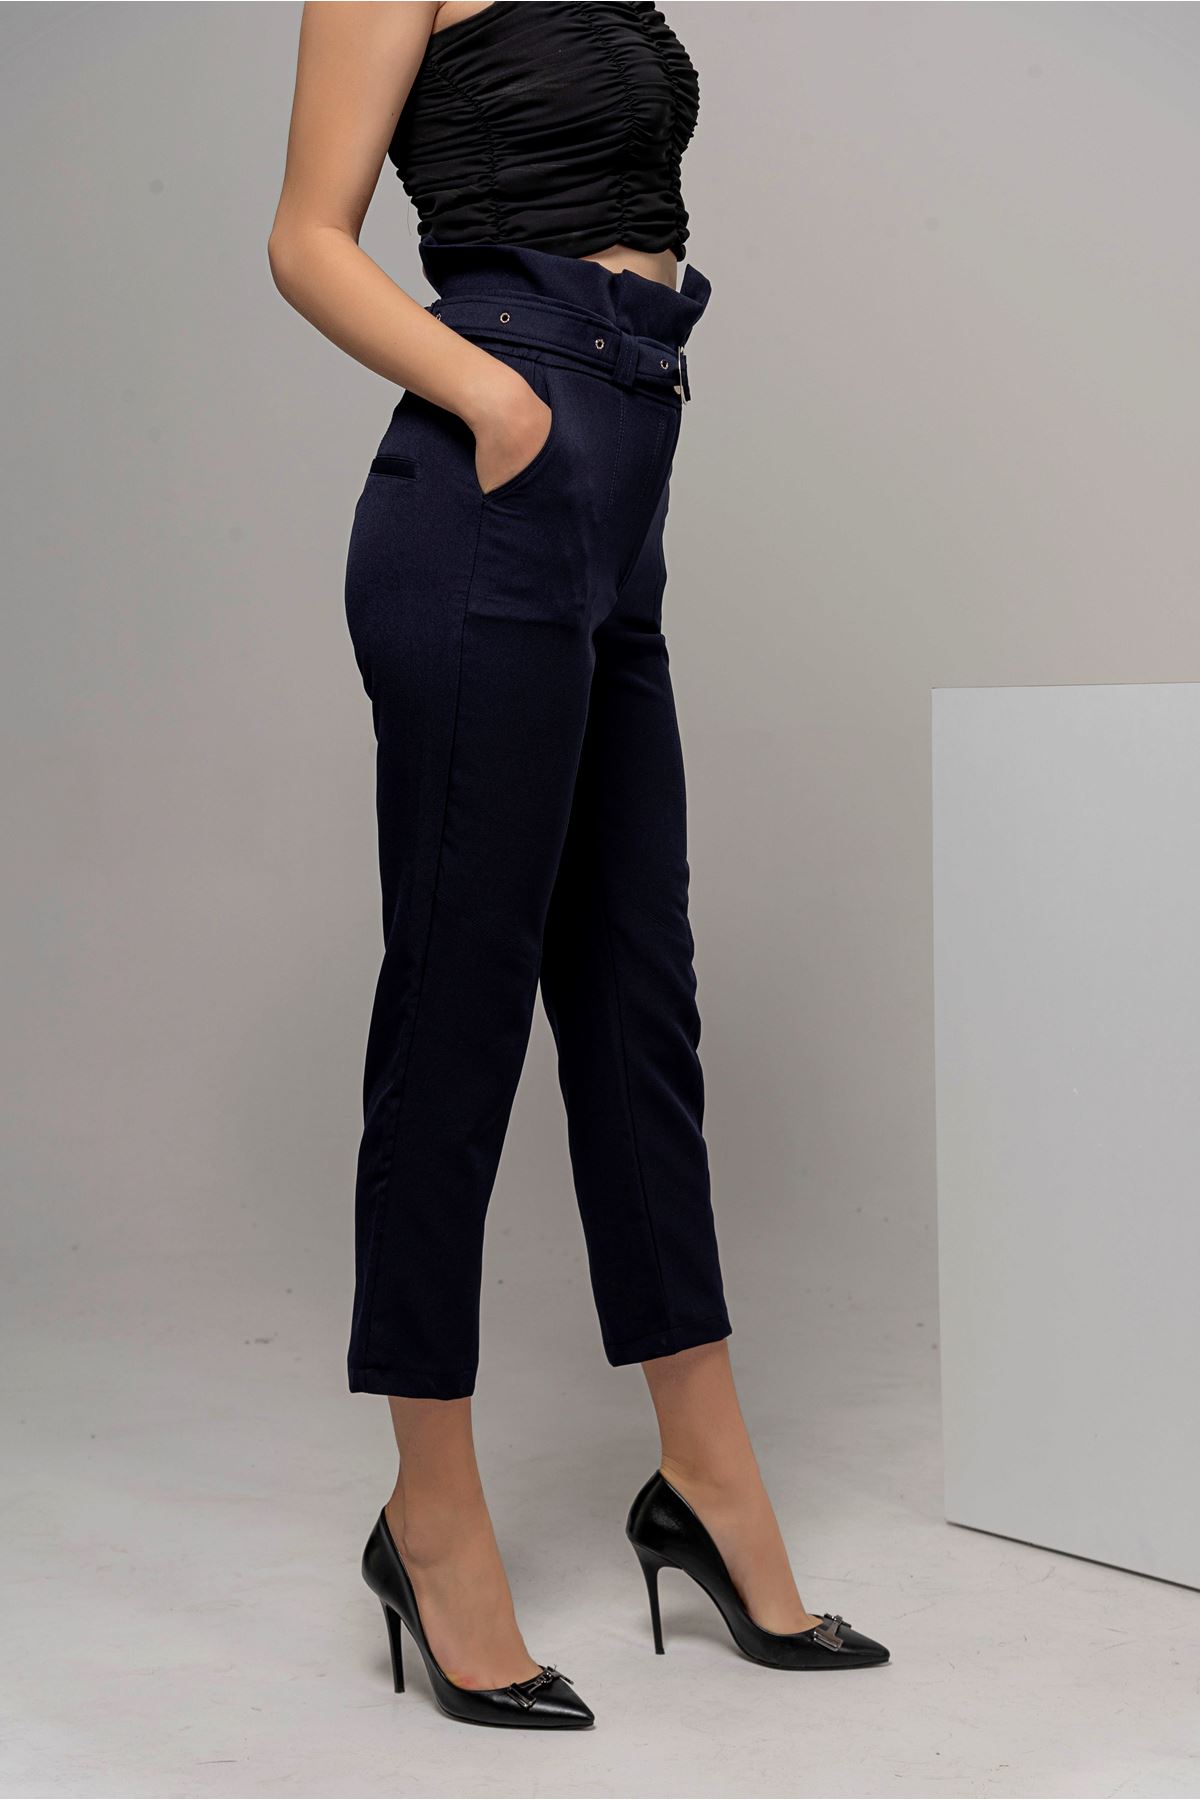 Atlas Fabric Classical High Waist Women'S Trouser - Navy Blue 